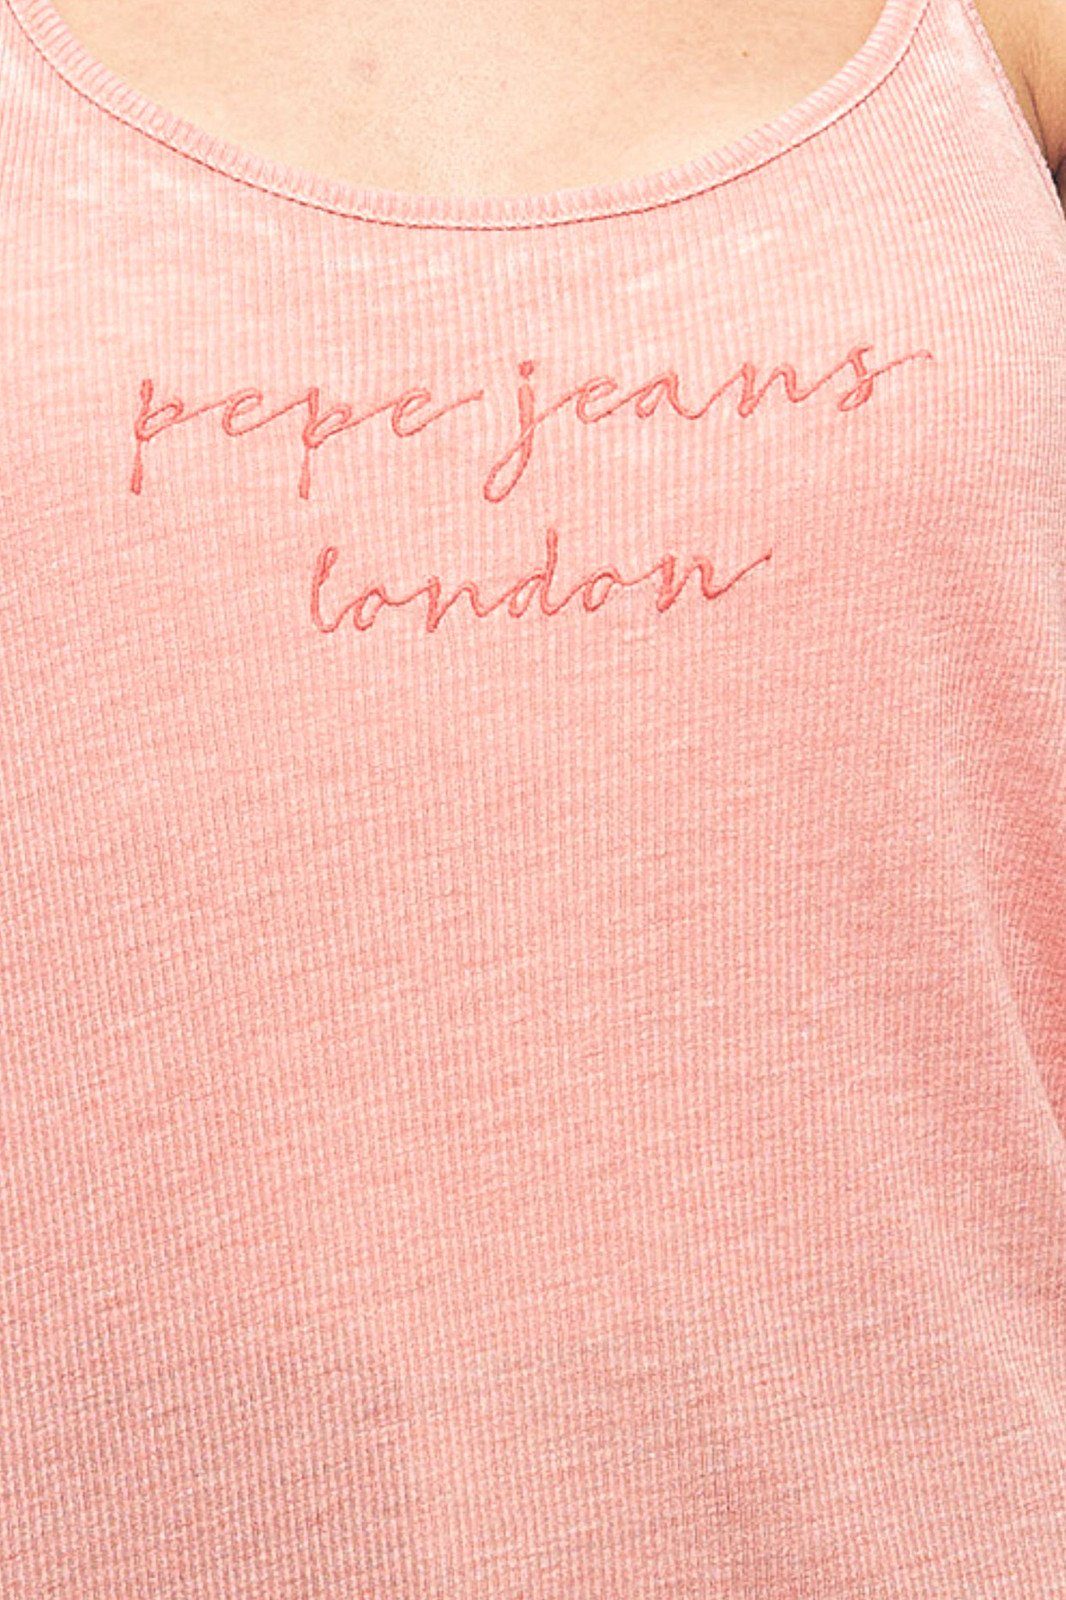 leichtes Rundhalsshirt Jeans Sommer-Shirt Pepe Freizeit-Top mit Damen Pepe Jeans Spaghetti-Trägern Shirt Koralle